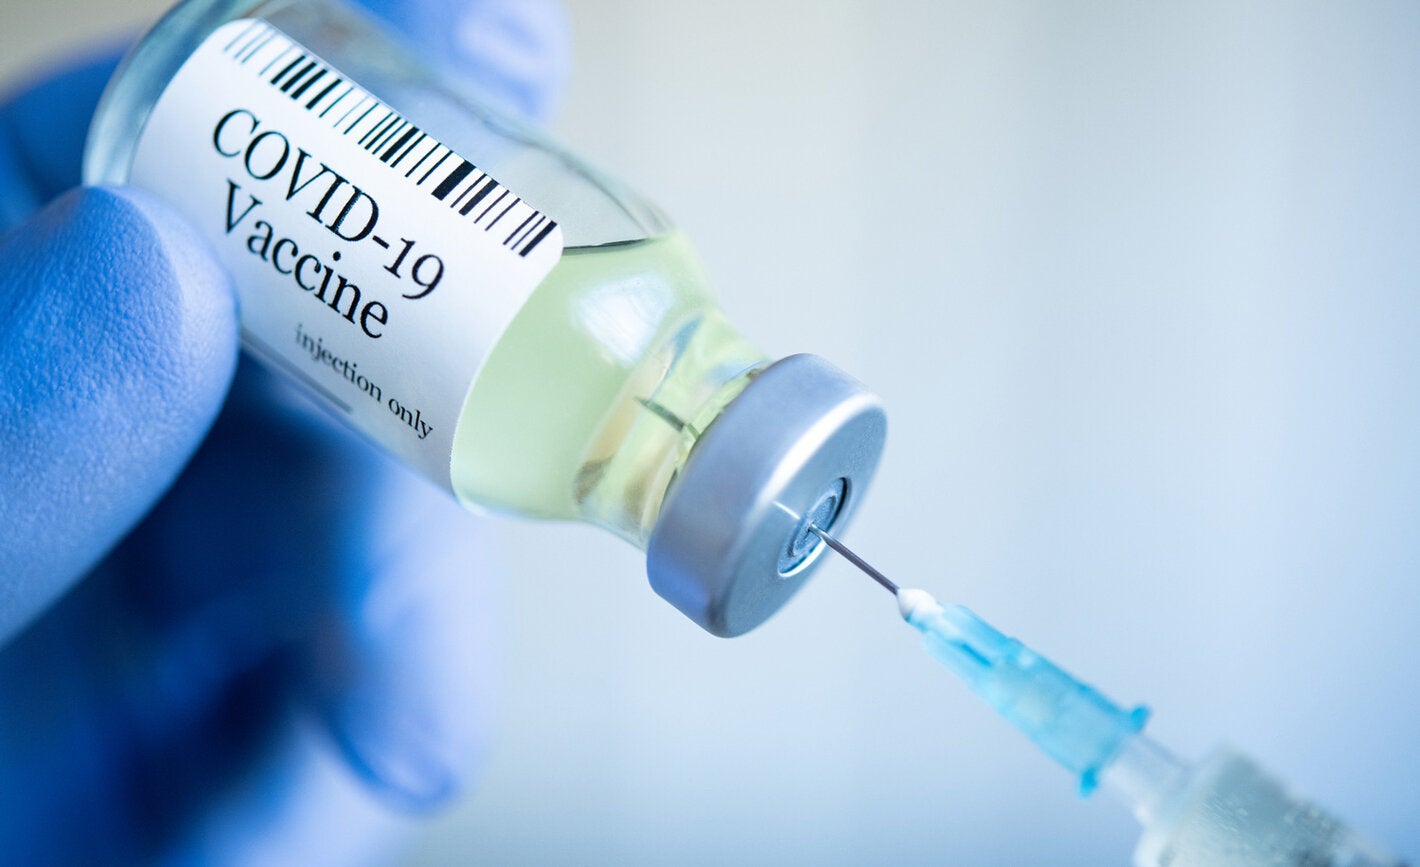 ¿Puede el gobierno obligar la vacunación contra el Covid-19? Expertos difieren sobre el tema